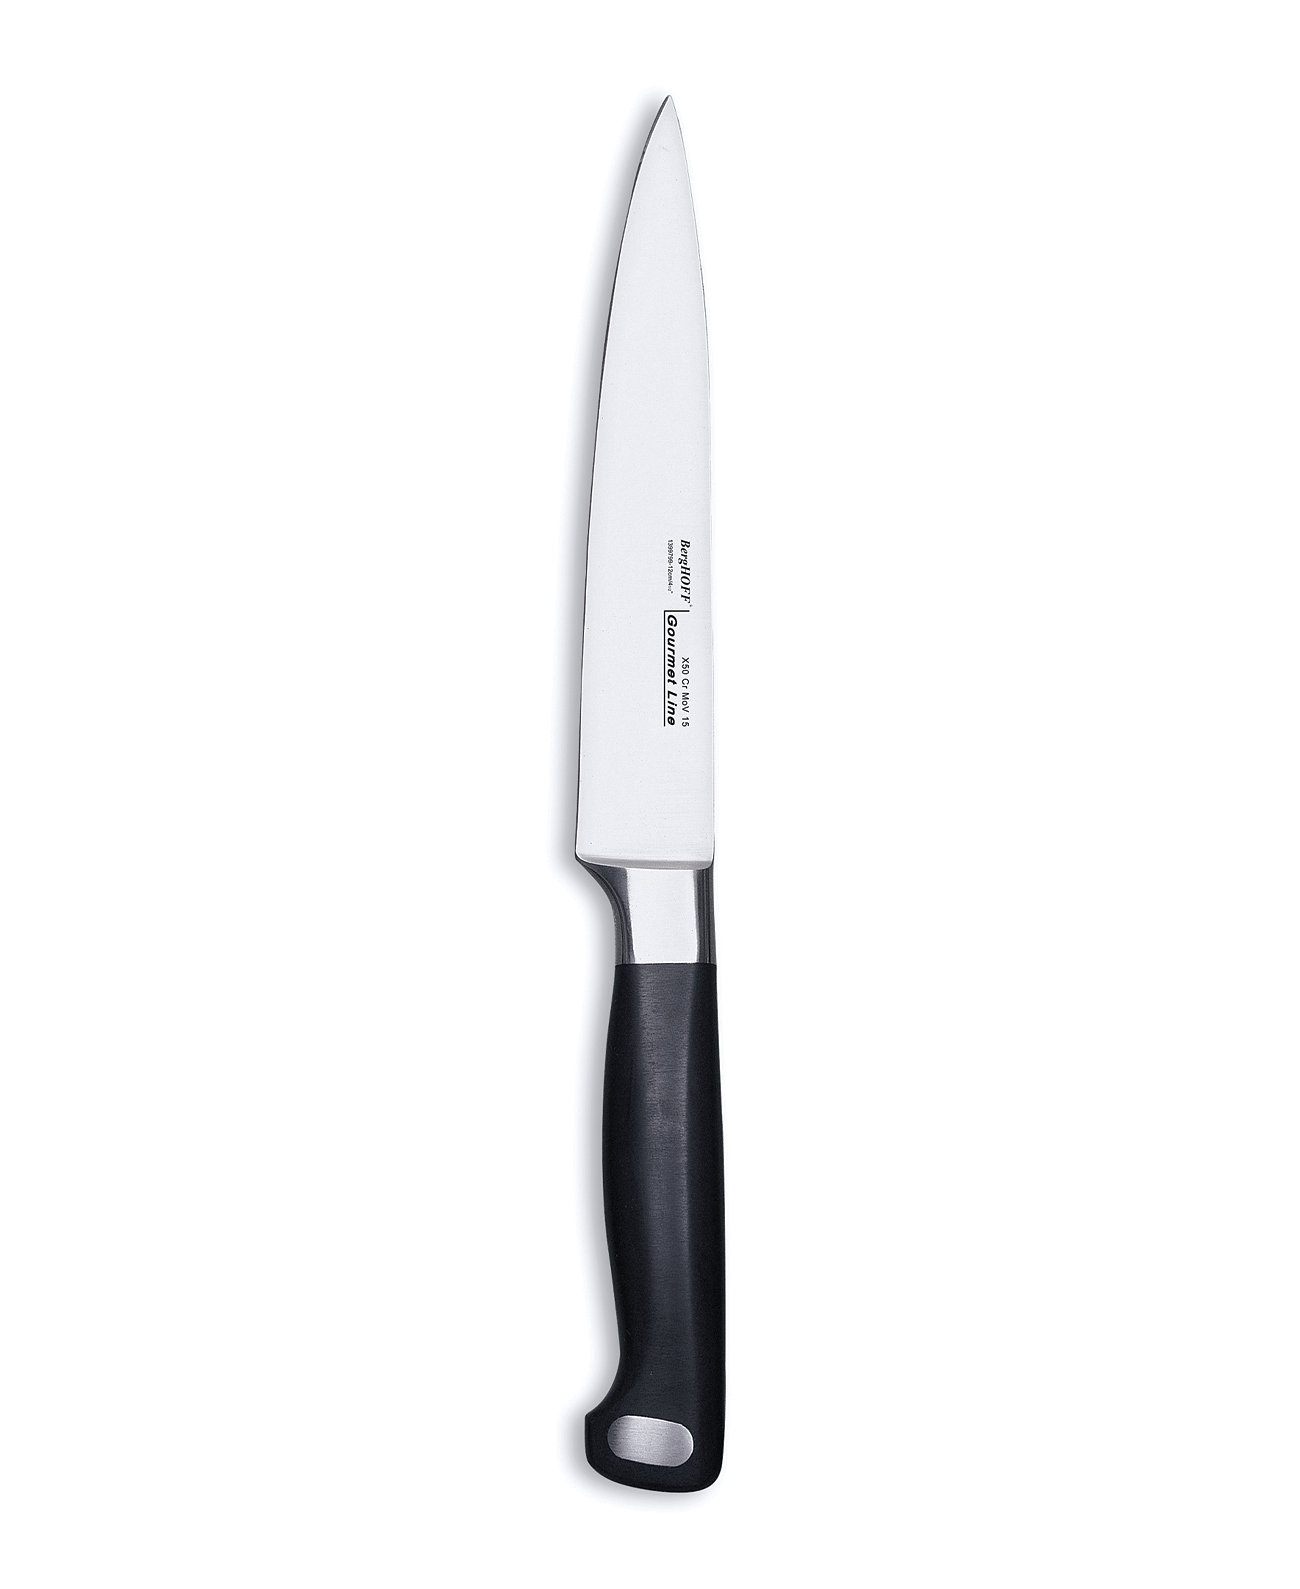 Нож для резьбы из нержавеющей стали Gourmet 8 дюймов BergHOFF